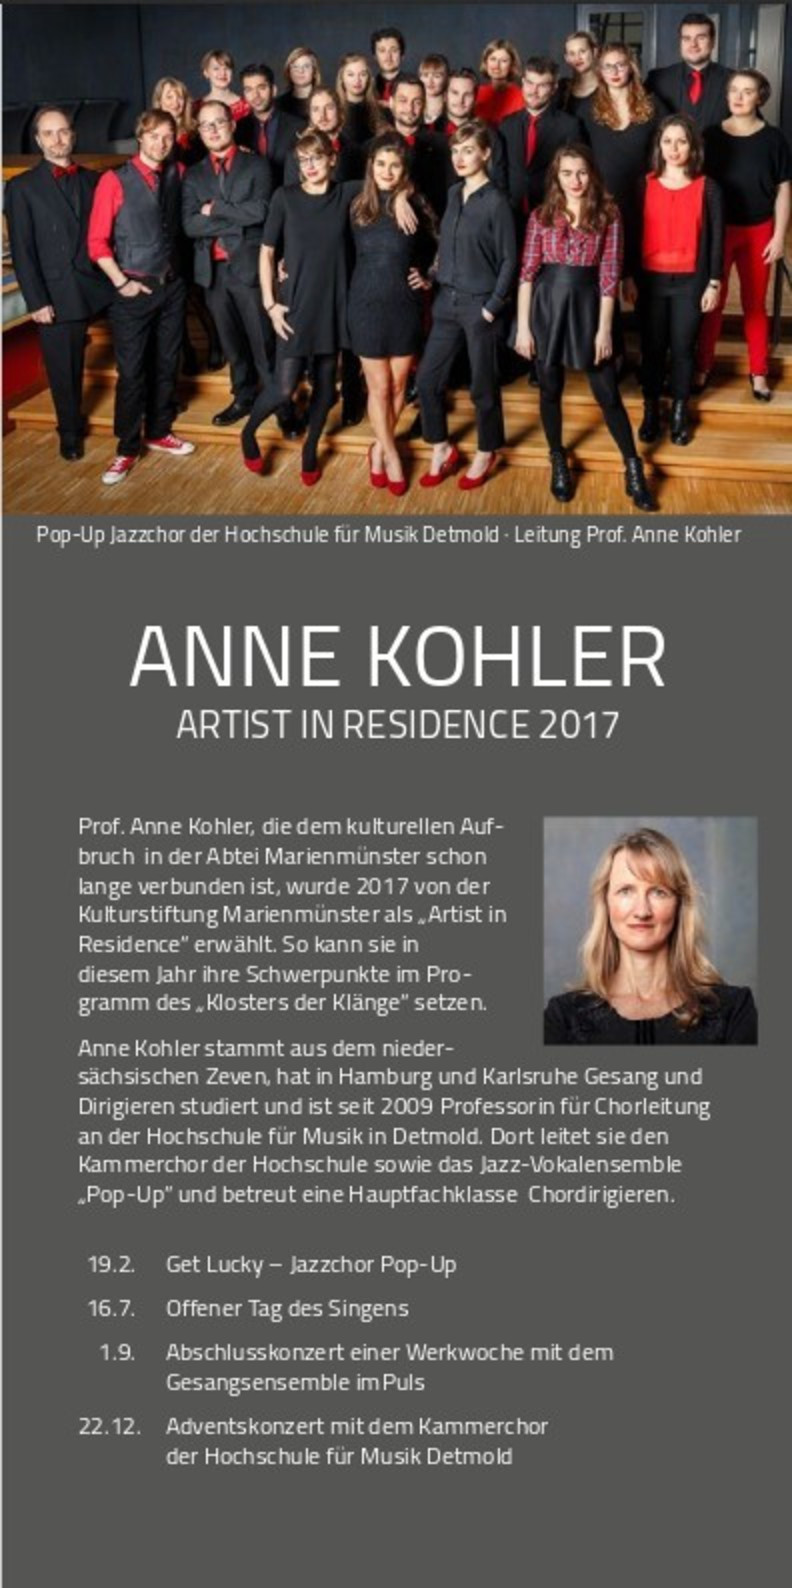 Anne Kohler ist Jahreskünstlerin der Kulturstifung Marienmünster